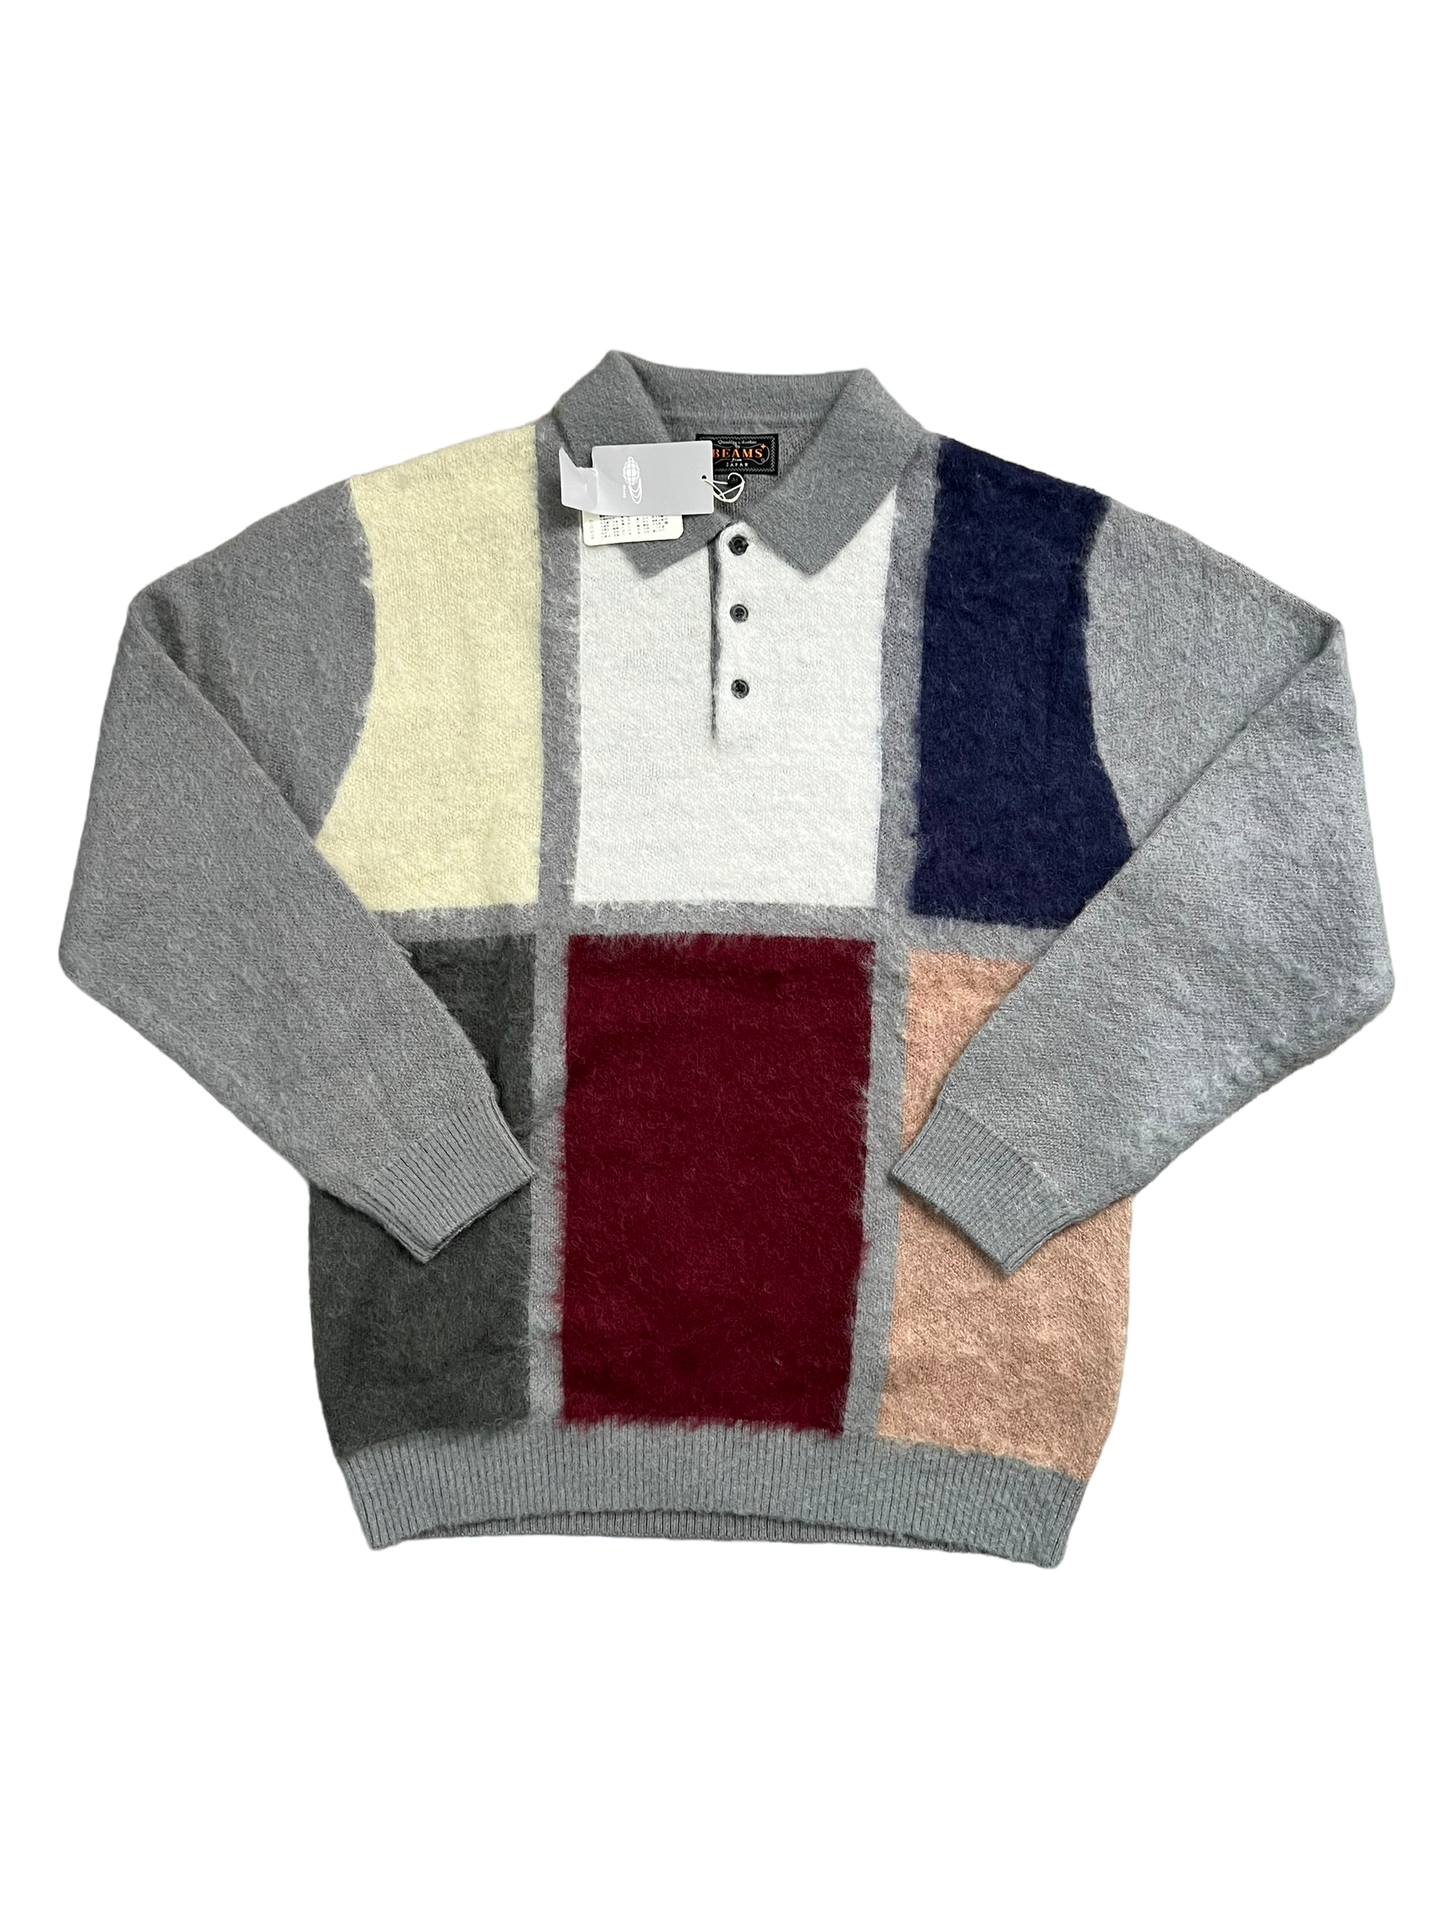 BEAMS
Knit Shaggy Polo Sweater